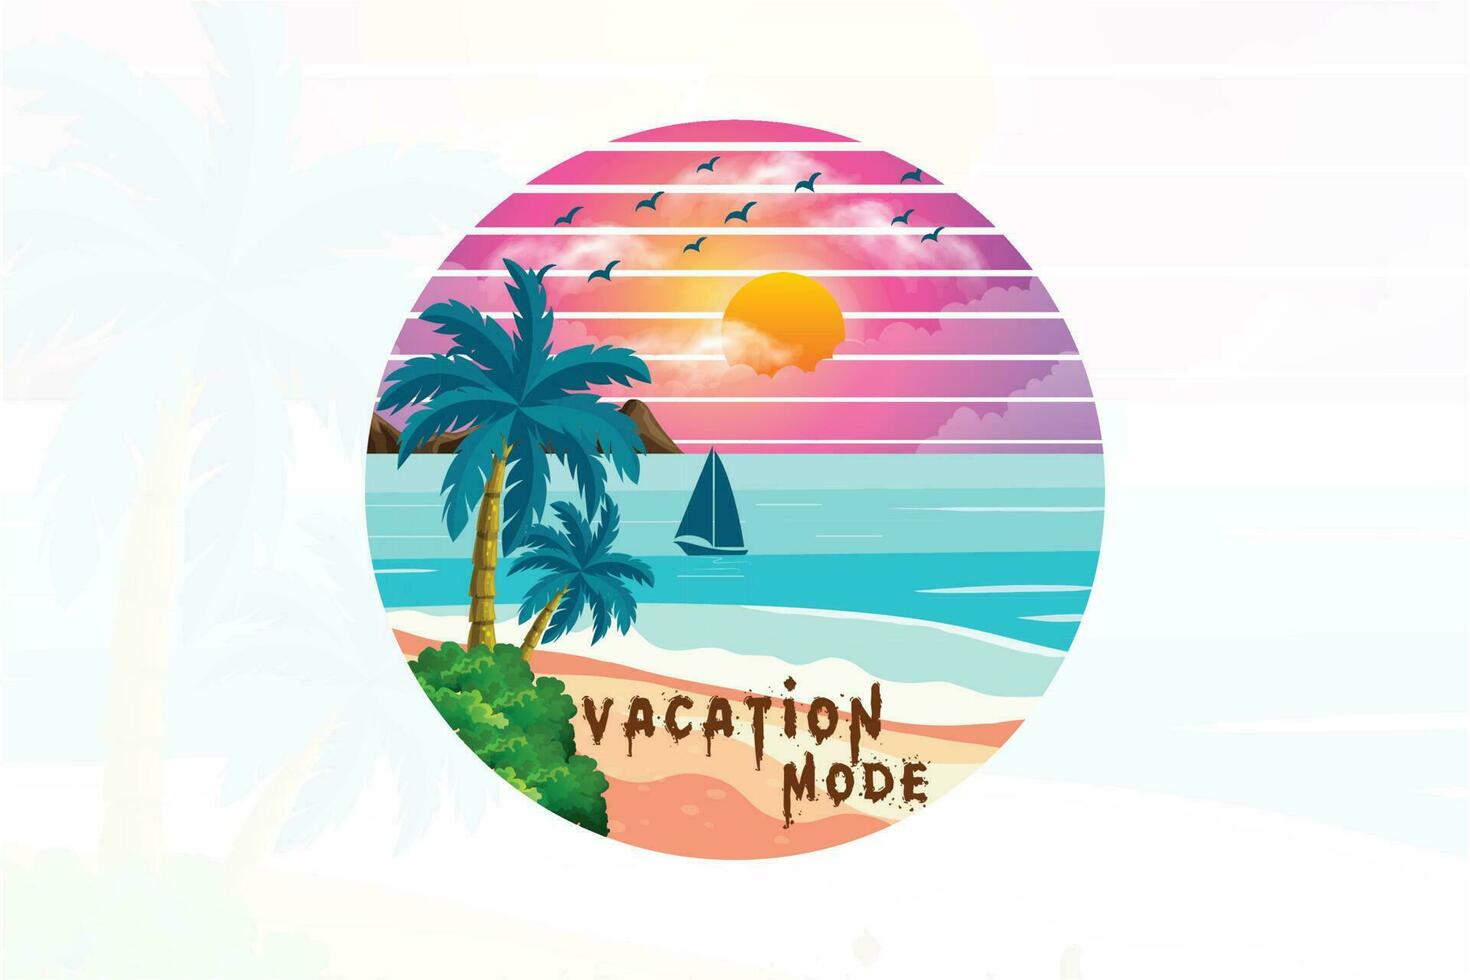 Vacation mode beach t shirt design vector